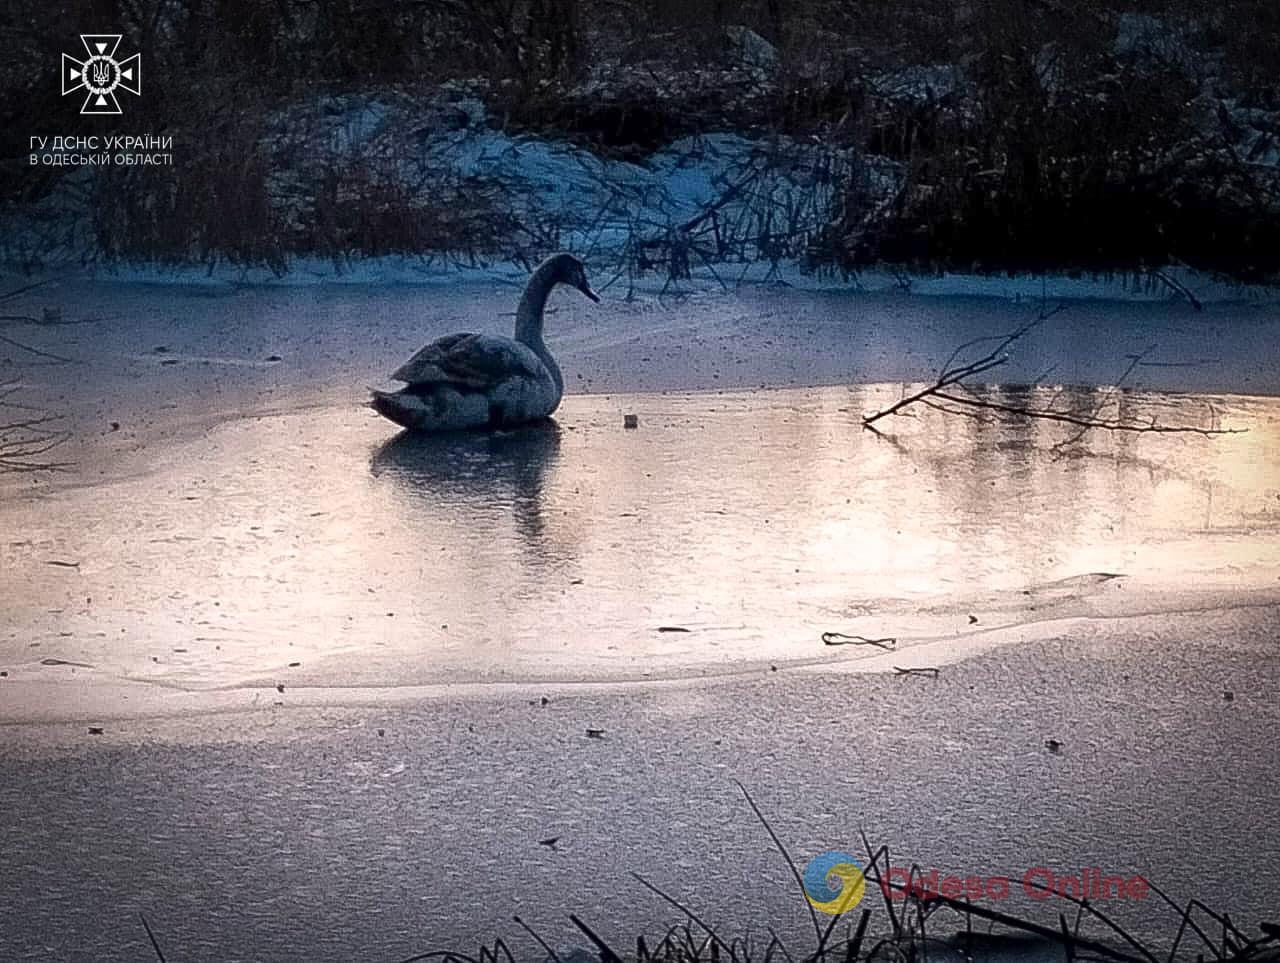 В Одеській області врятували лебедя, який «вмерз» у лід (фото)